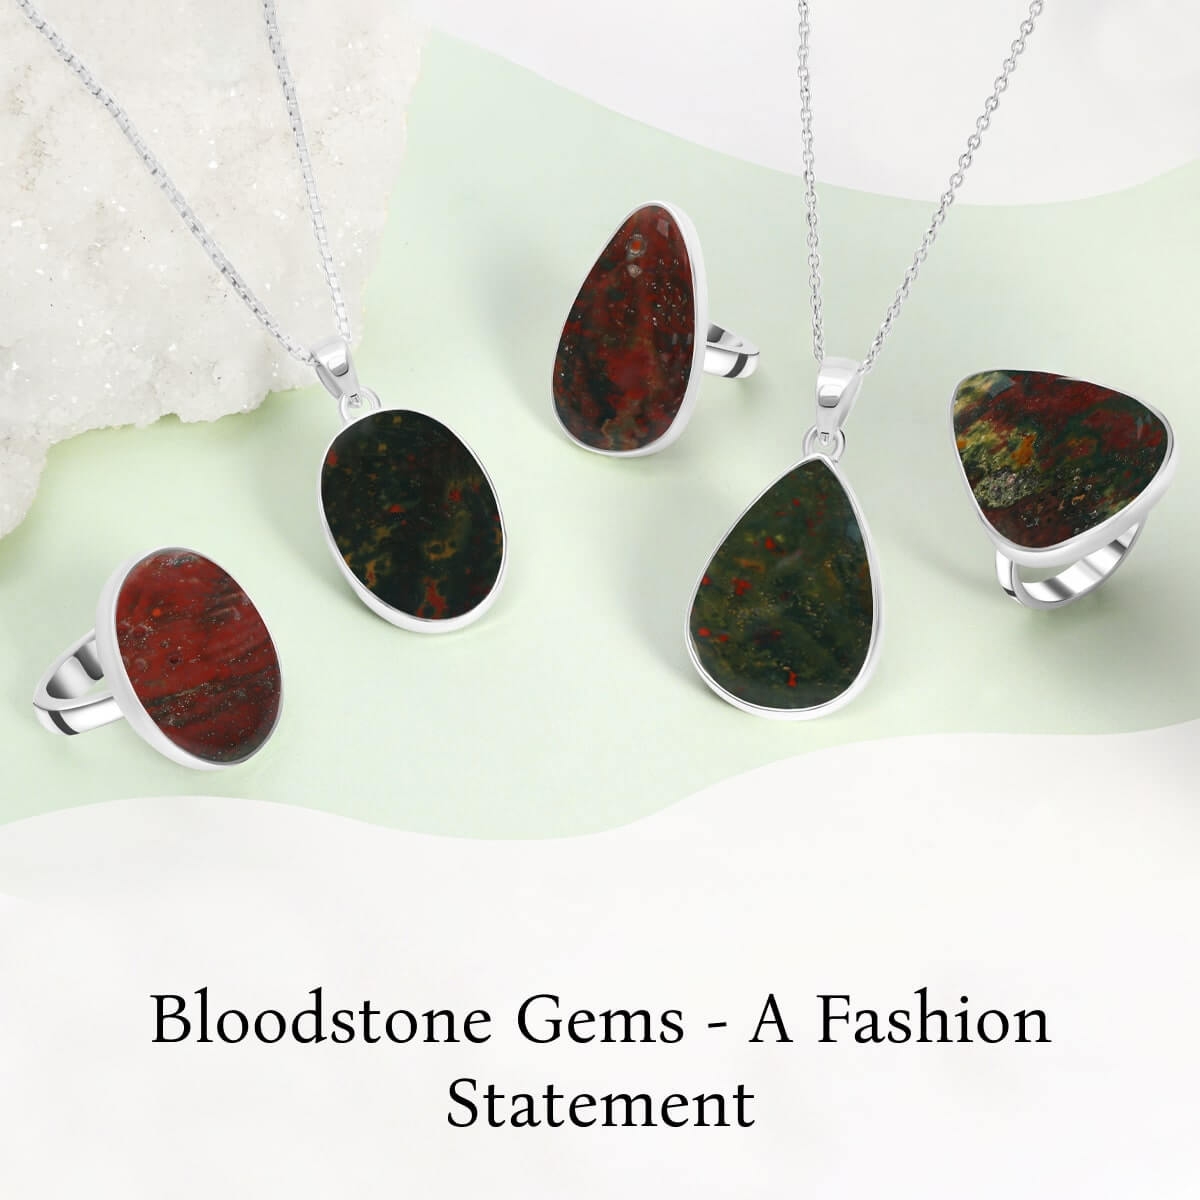 Bloodstone as jewelry